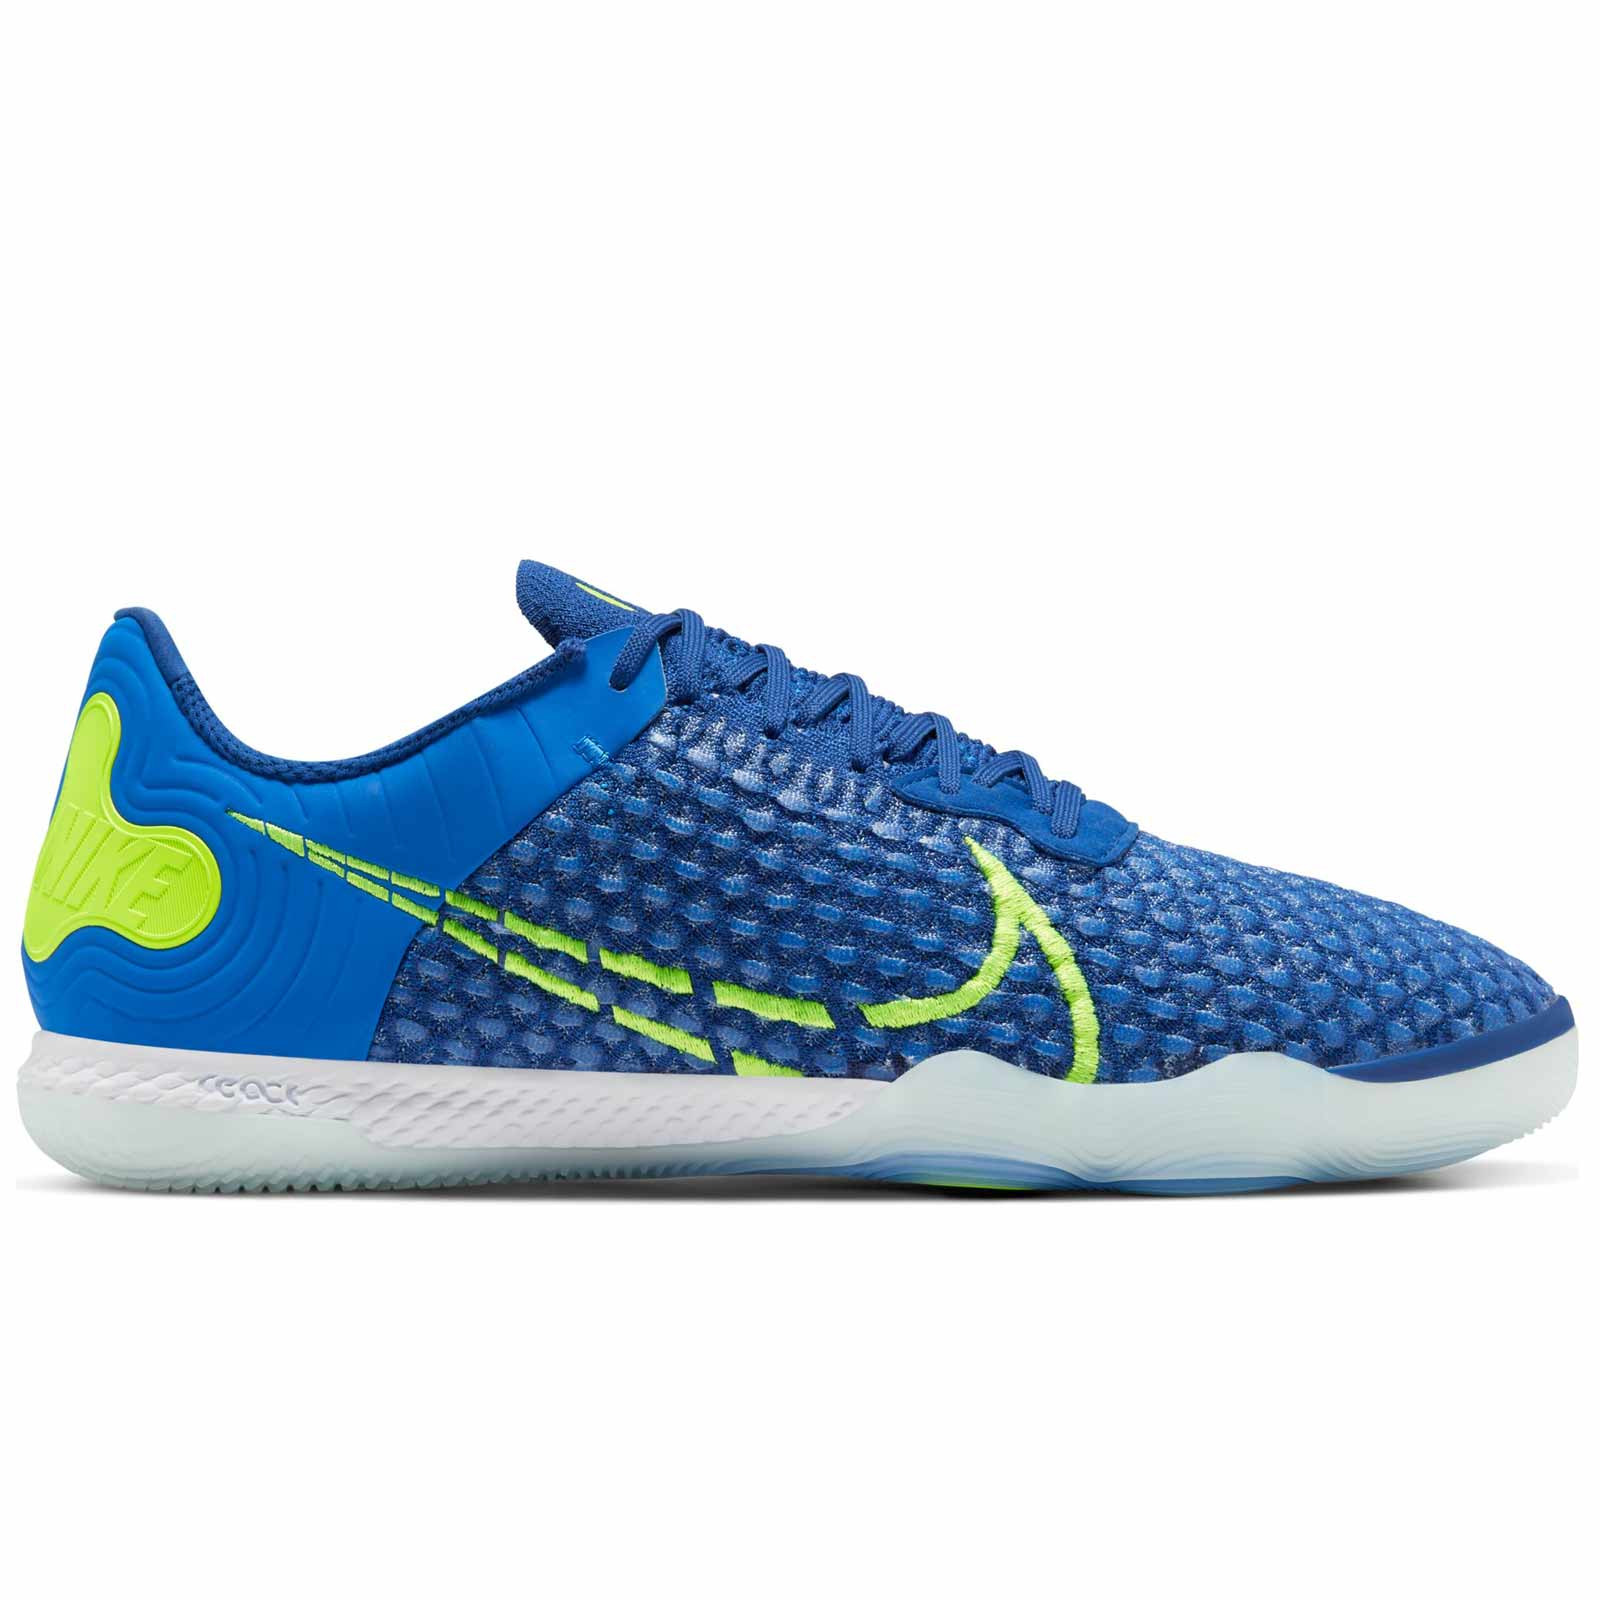 Hombre Dalset vestido Zapatillas futsal Nike React Gato azules | futbolmania